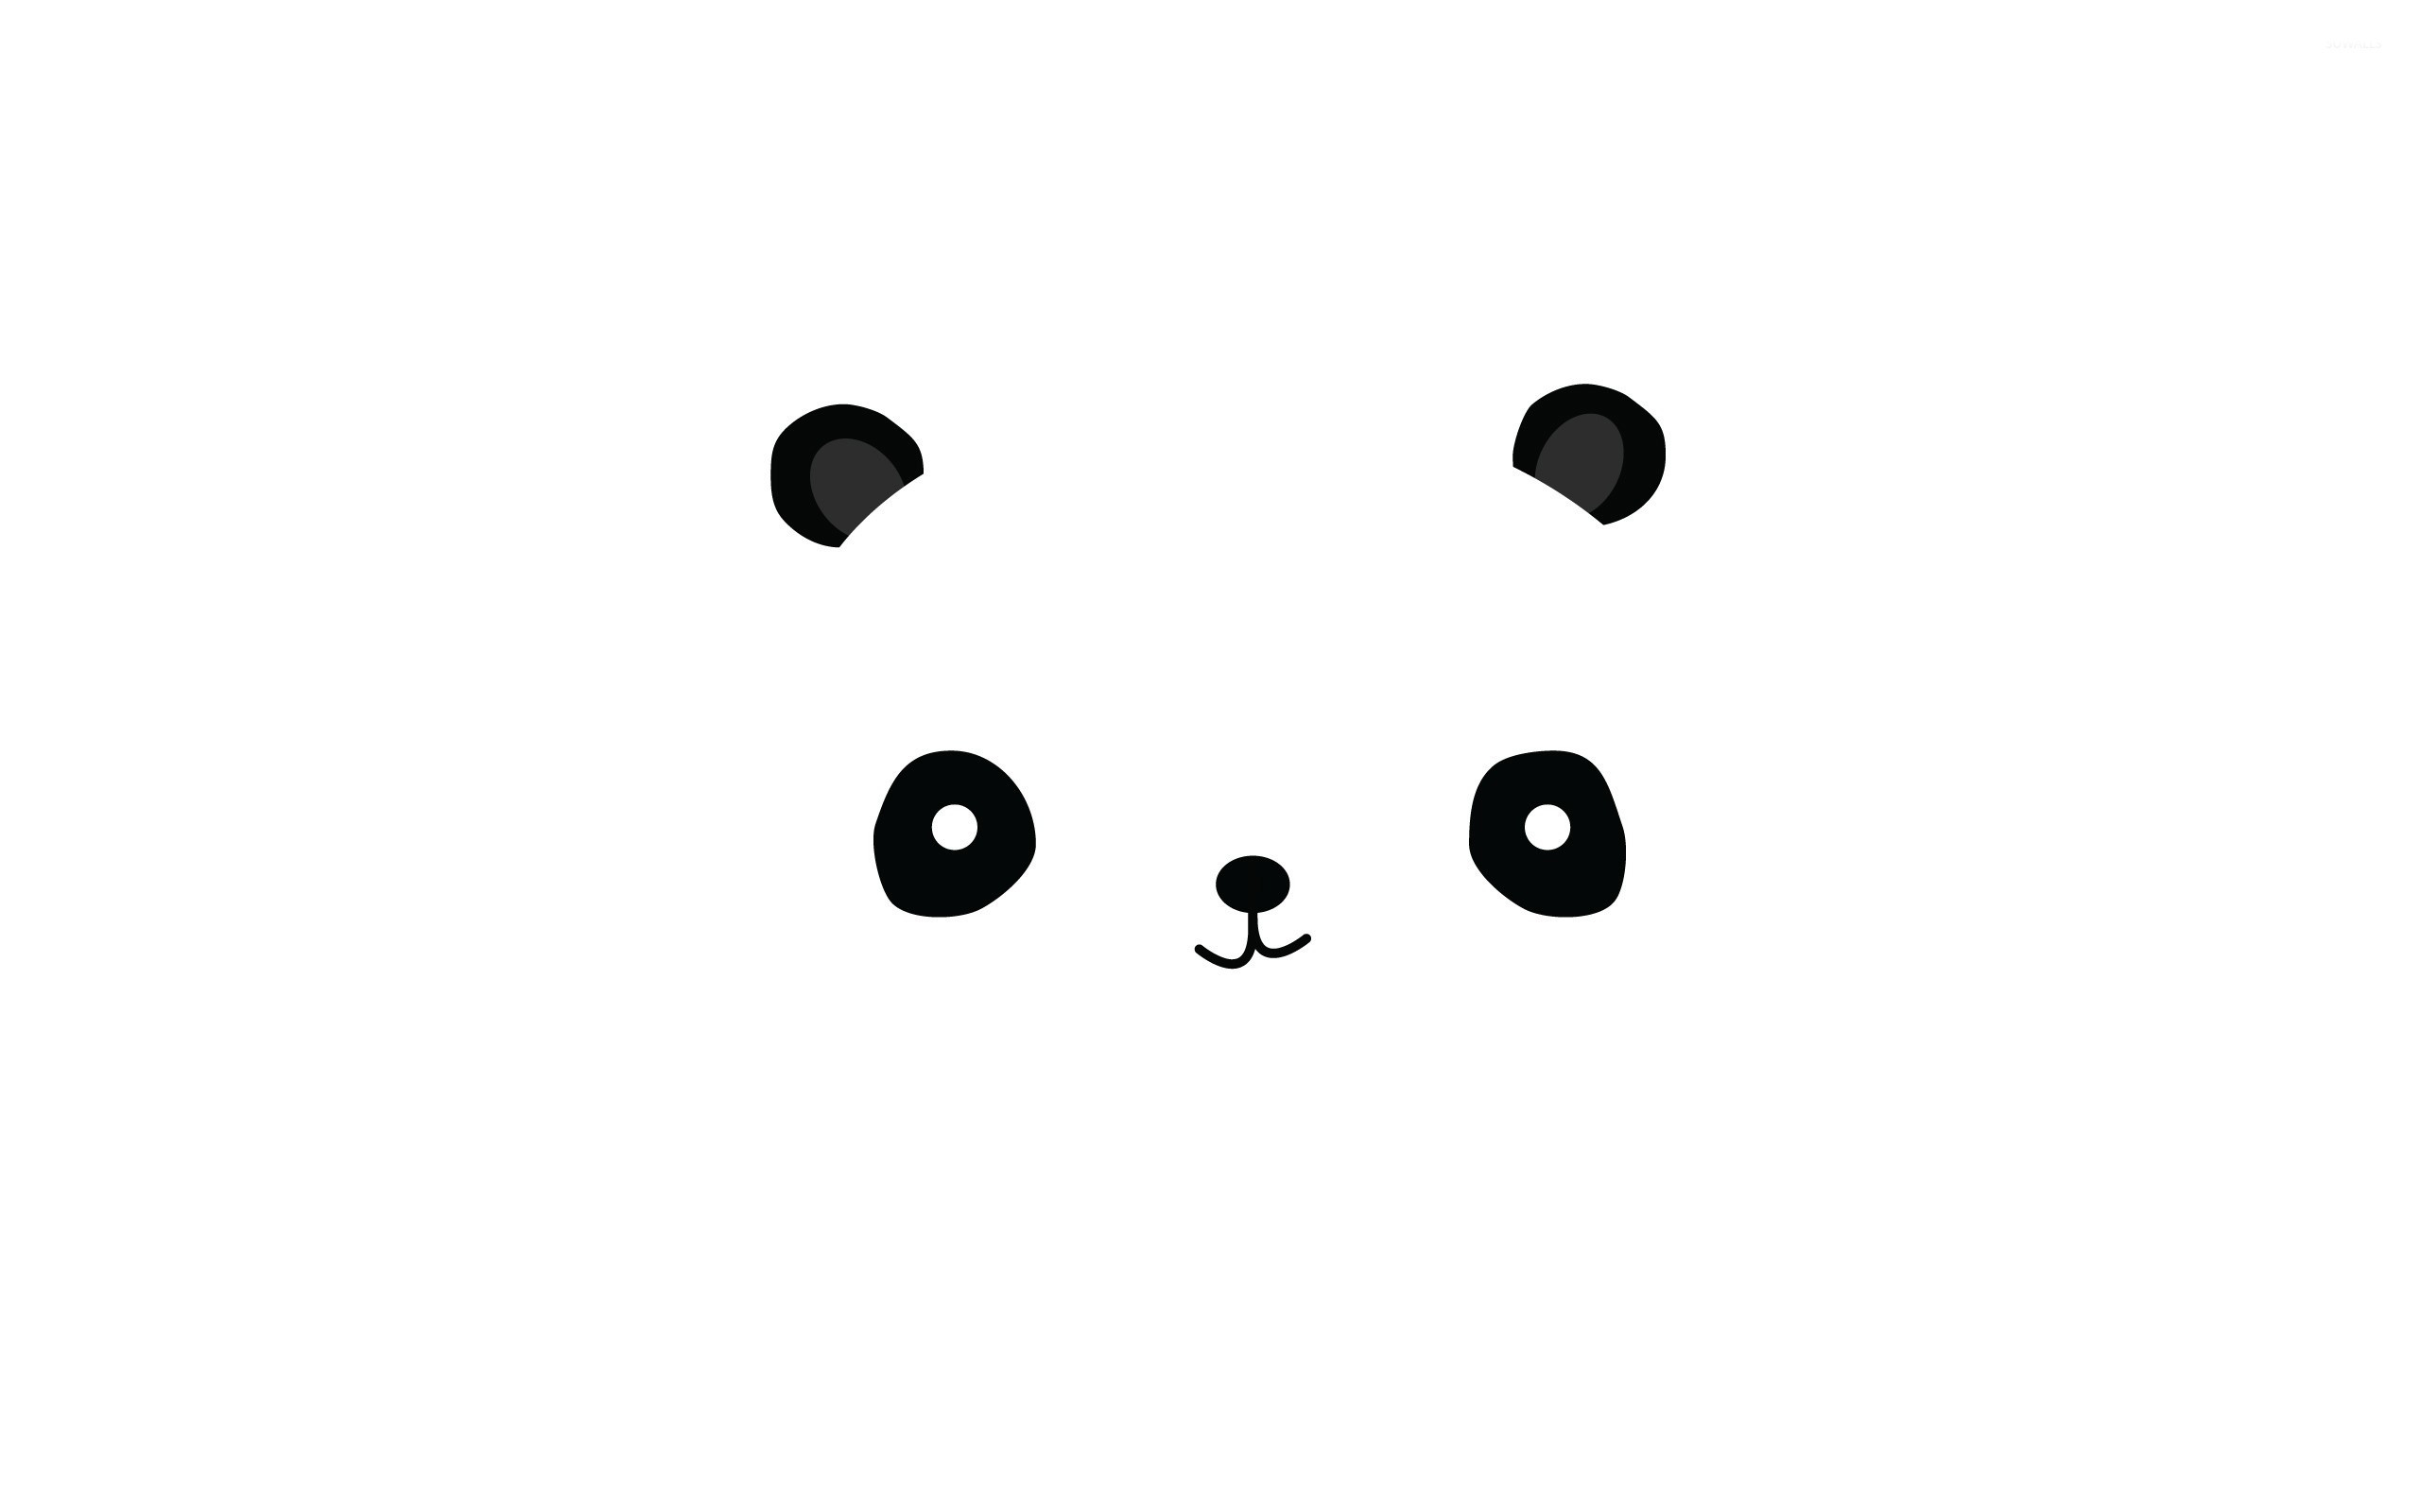 2560x1600 Panda face wallpaper